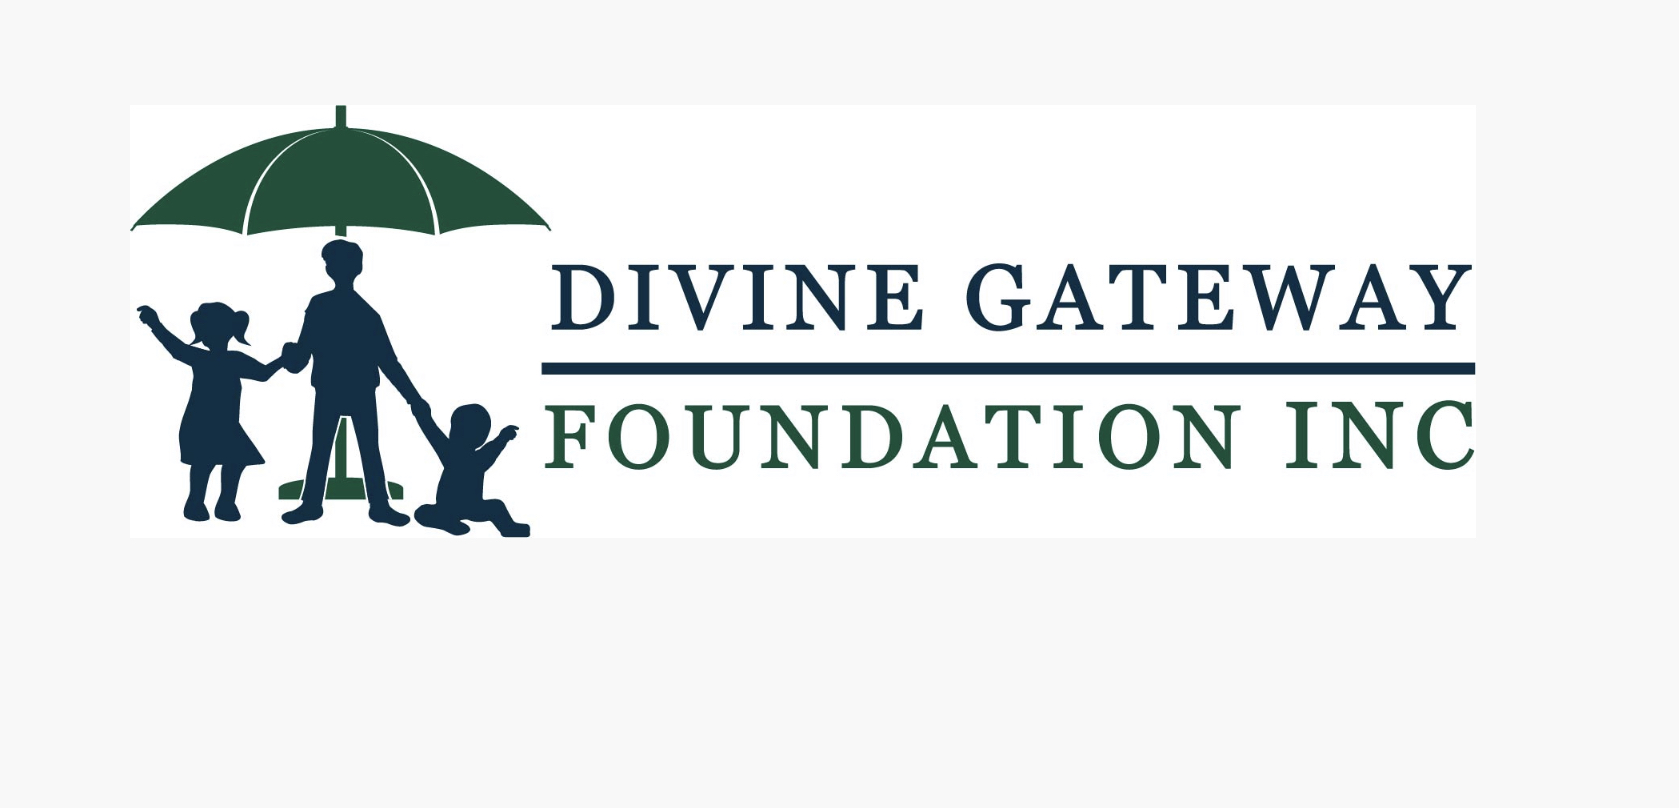 Divinegatewayfoundation.org – Official Site